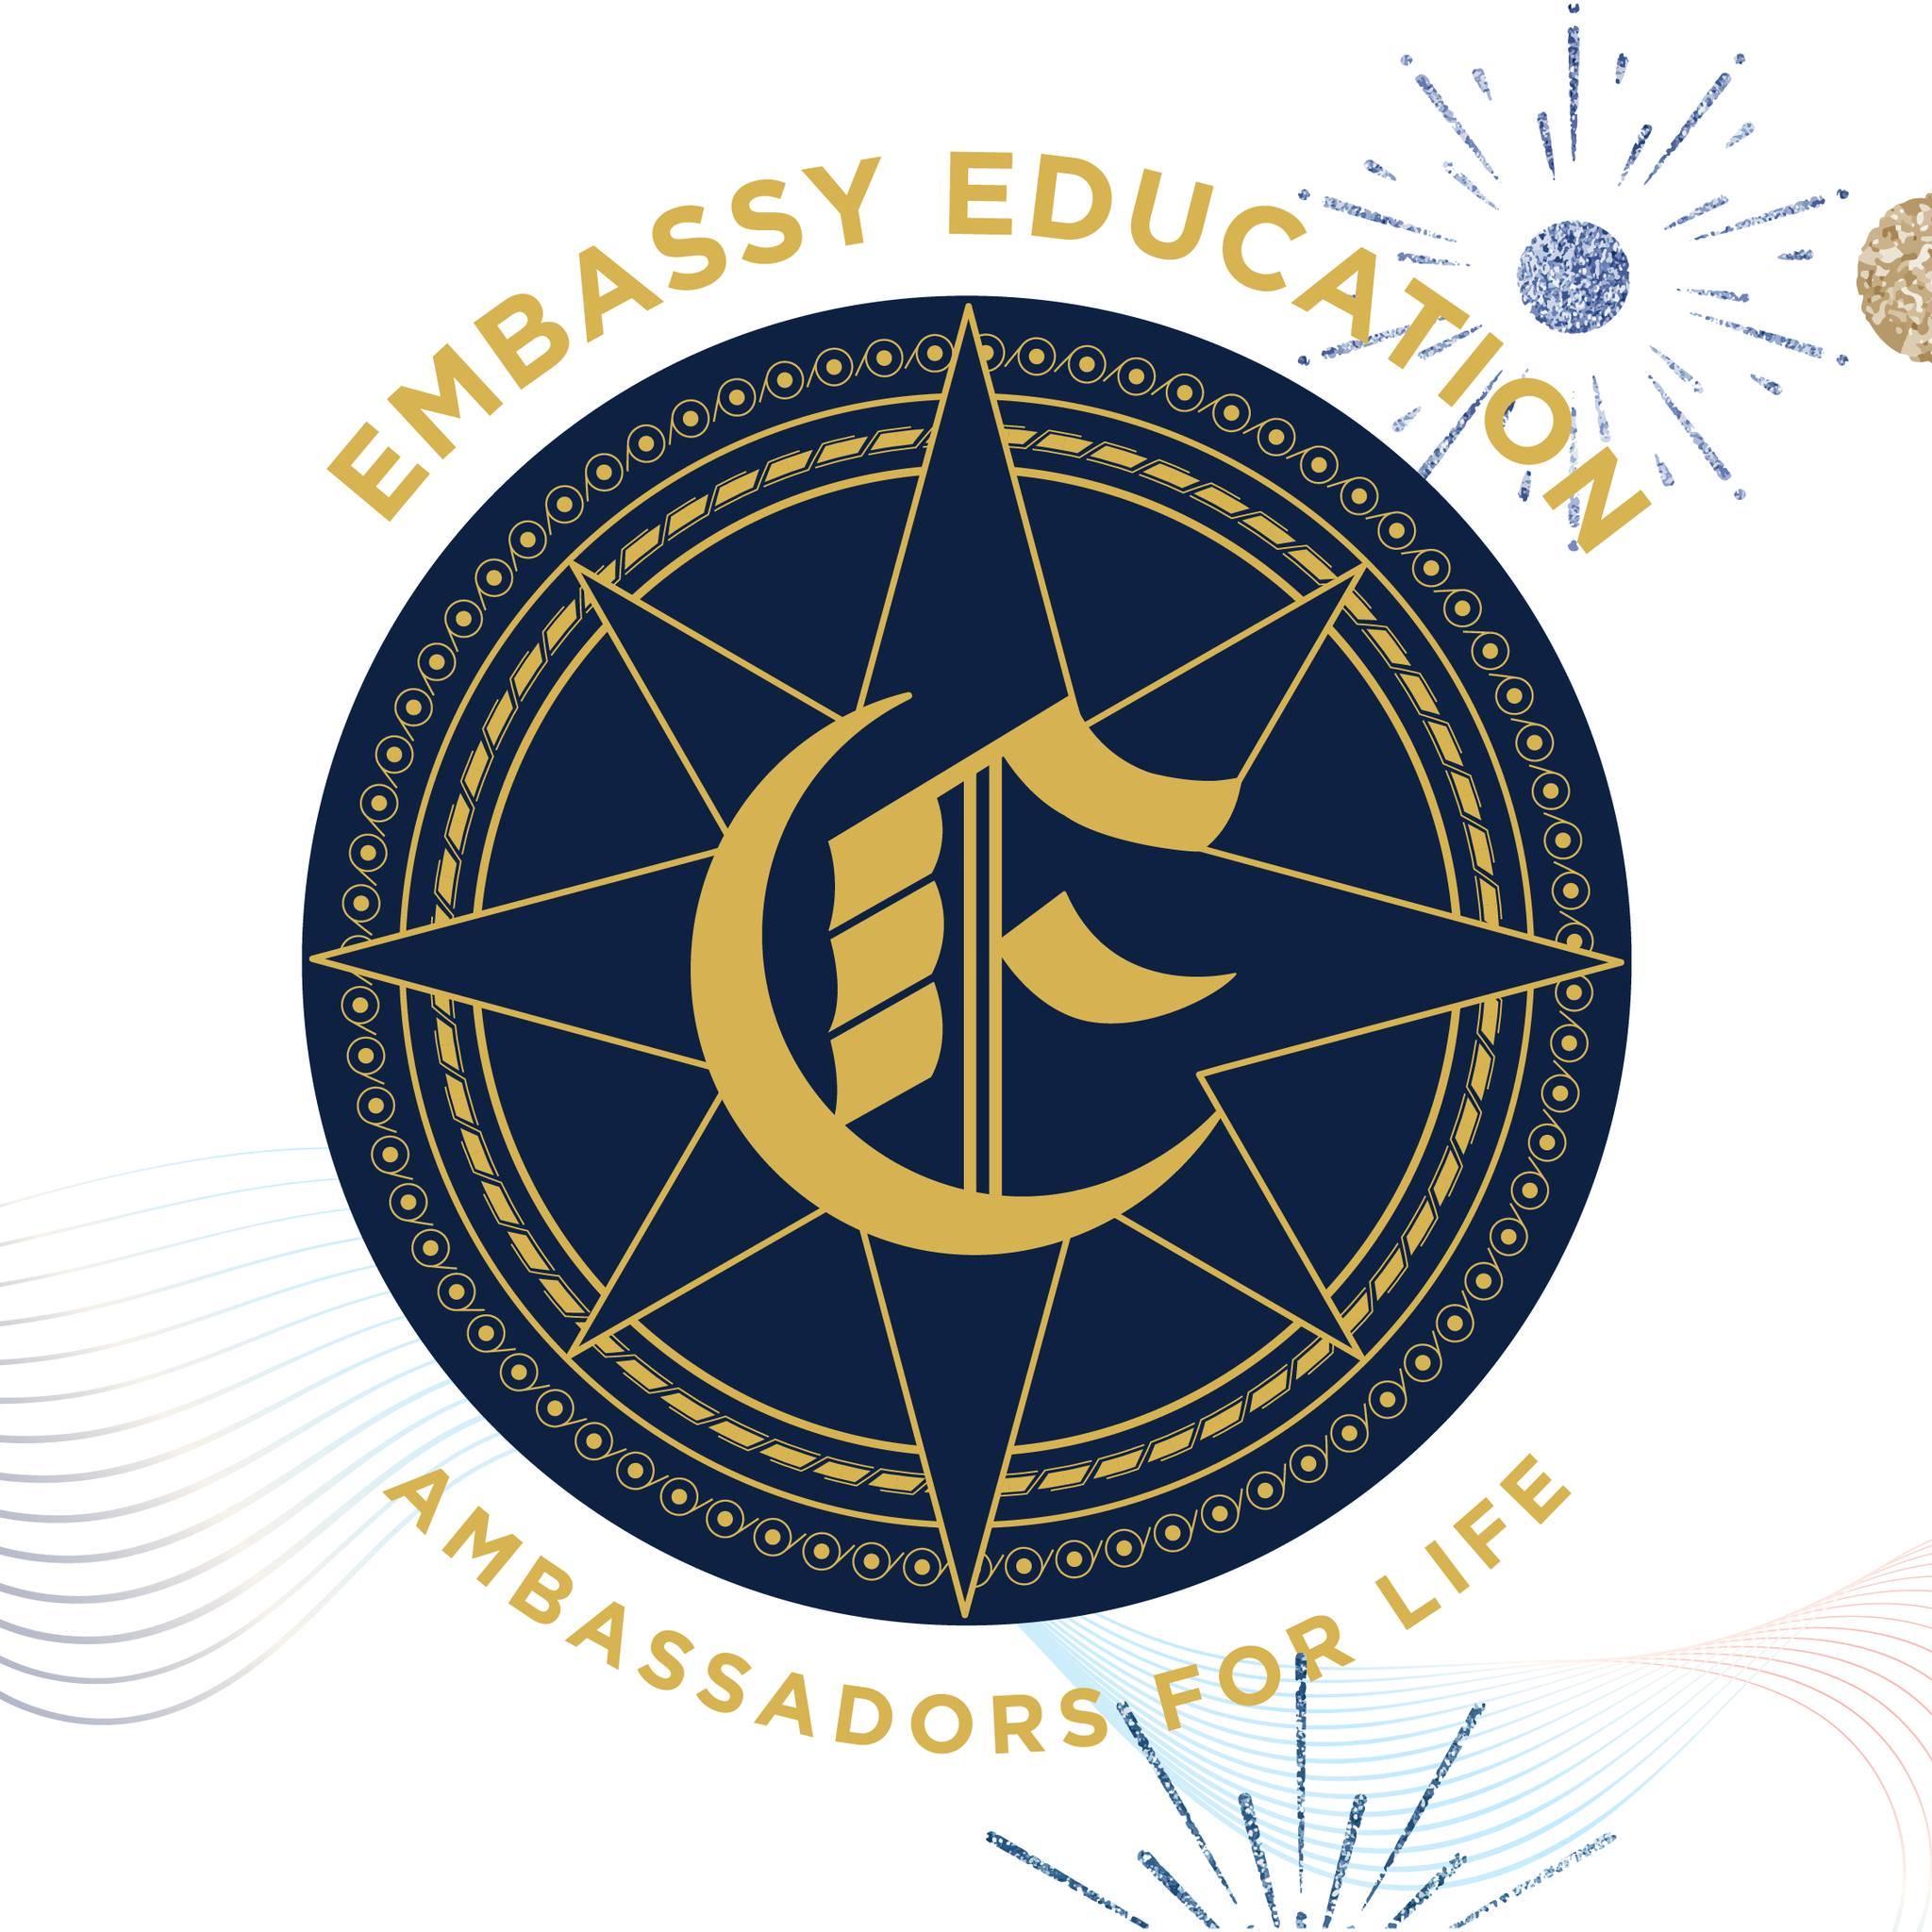 Embassy Education Group tuyển dụng - Tìm việc mới nhất, lương thưởng hấp dẫn.